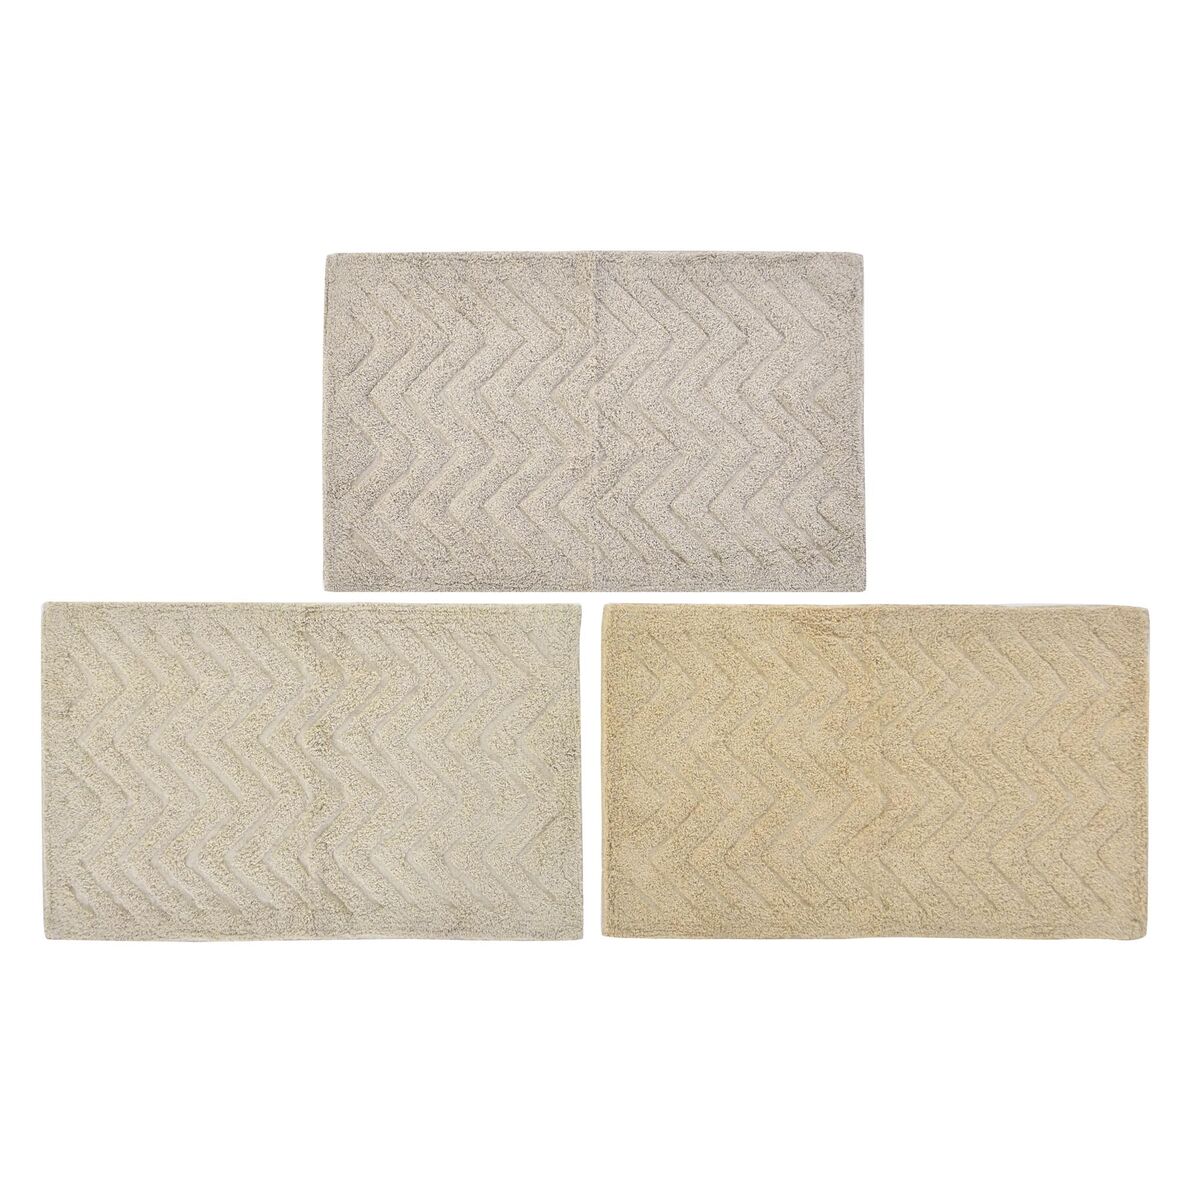 Tapis de bain DKD Home Decor Beige Marron Coton Marron Clair (80 x 50 x 1 cm) (3 Unités)